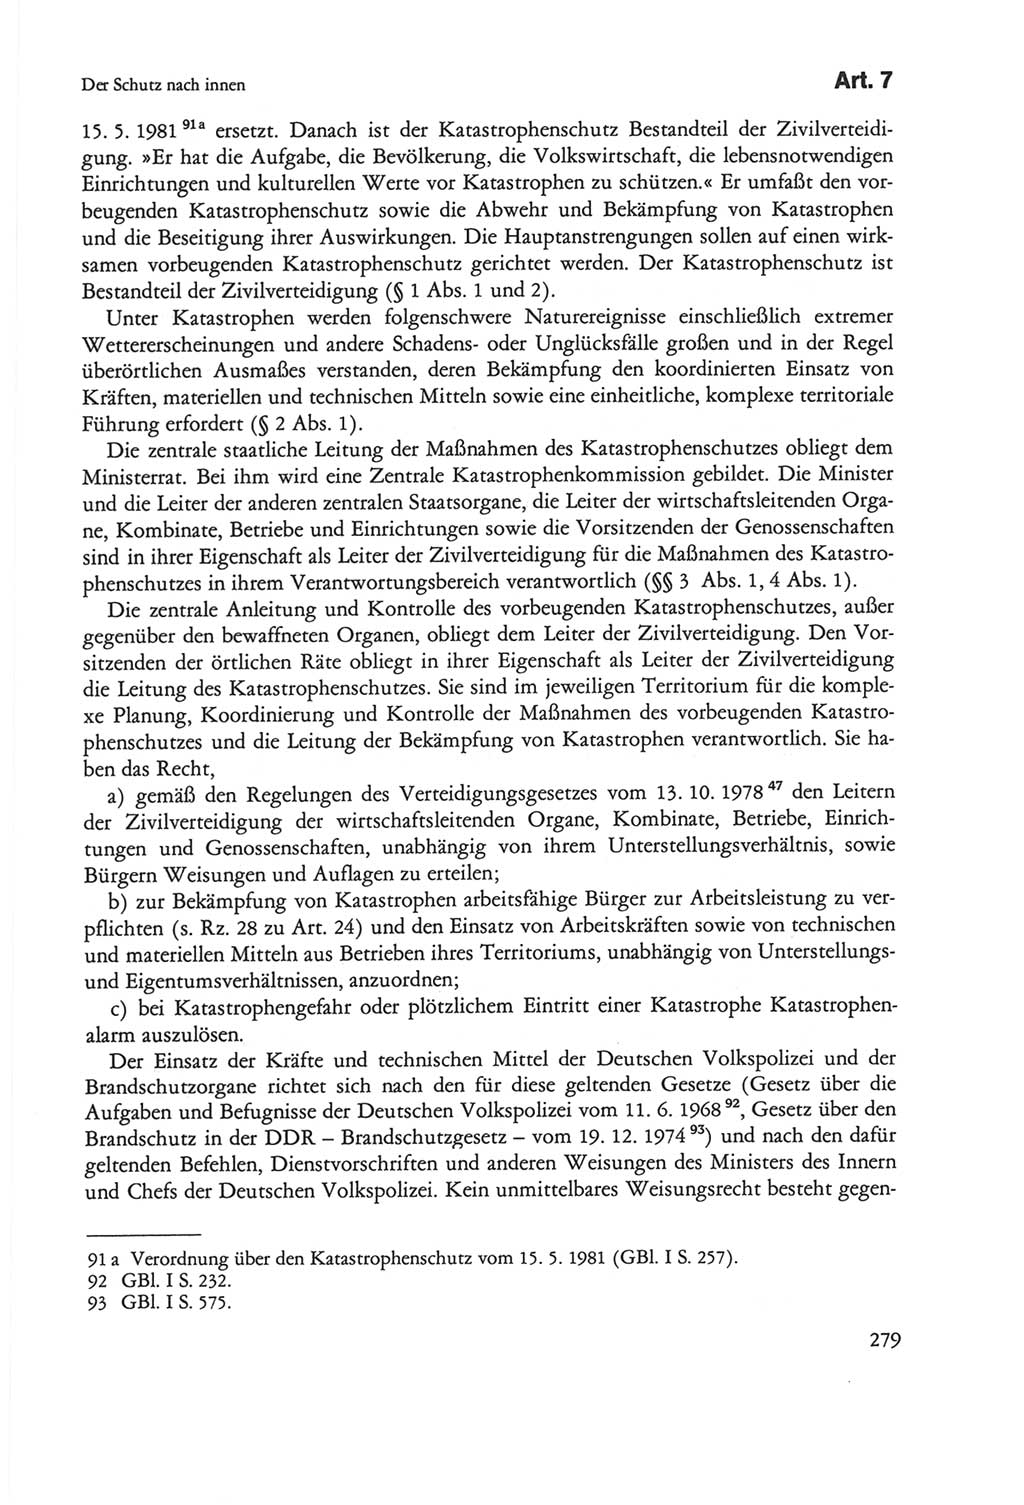 Die sozialistische Verfassung der Deutschen Demokratischen Republik (DDR), Kommentar mit einem Nachtrag 1997, Seite 279 (Soz. Verf. DDR Komm. Nachtr. 1997, S. 279)